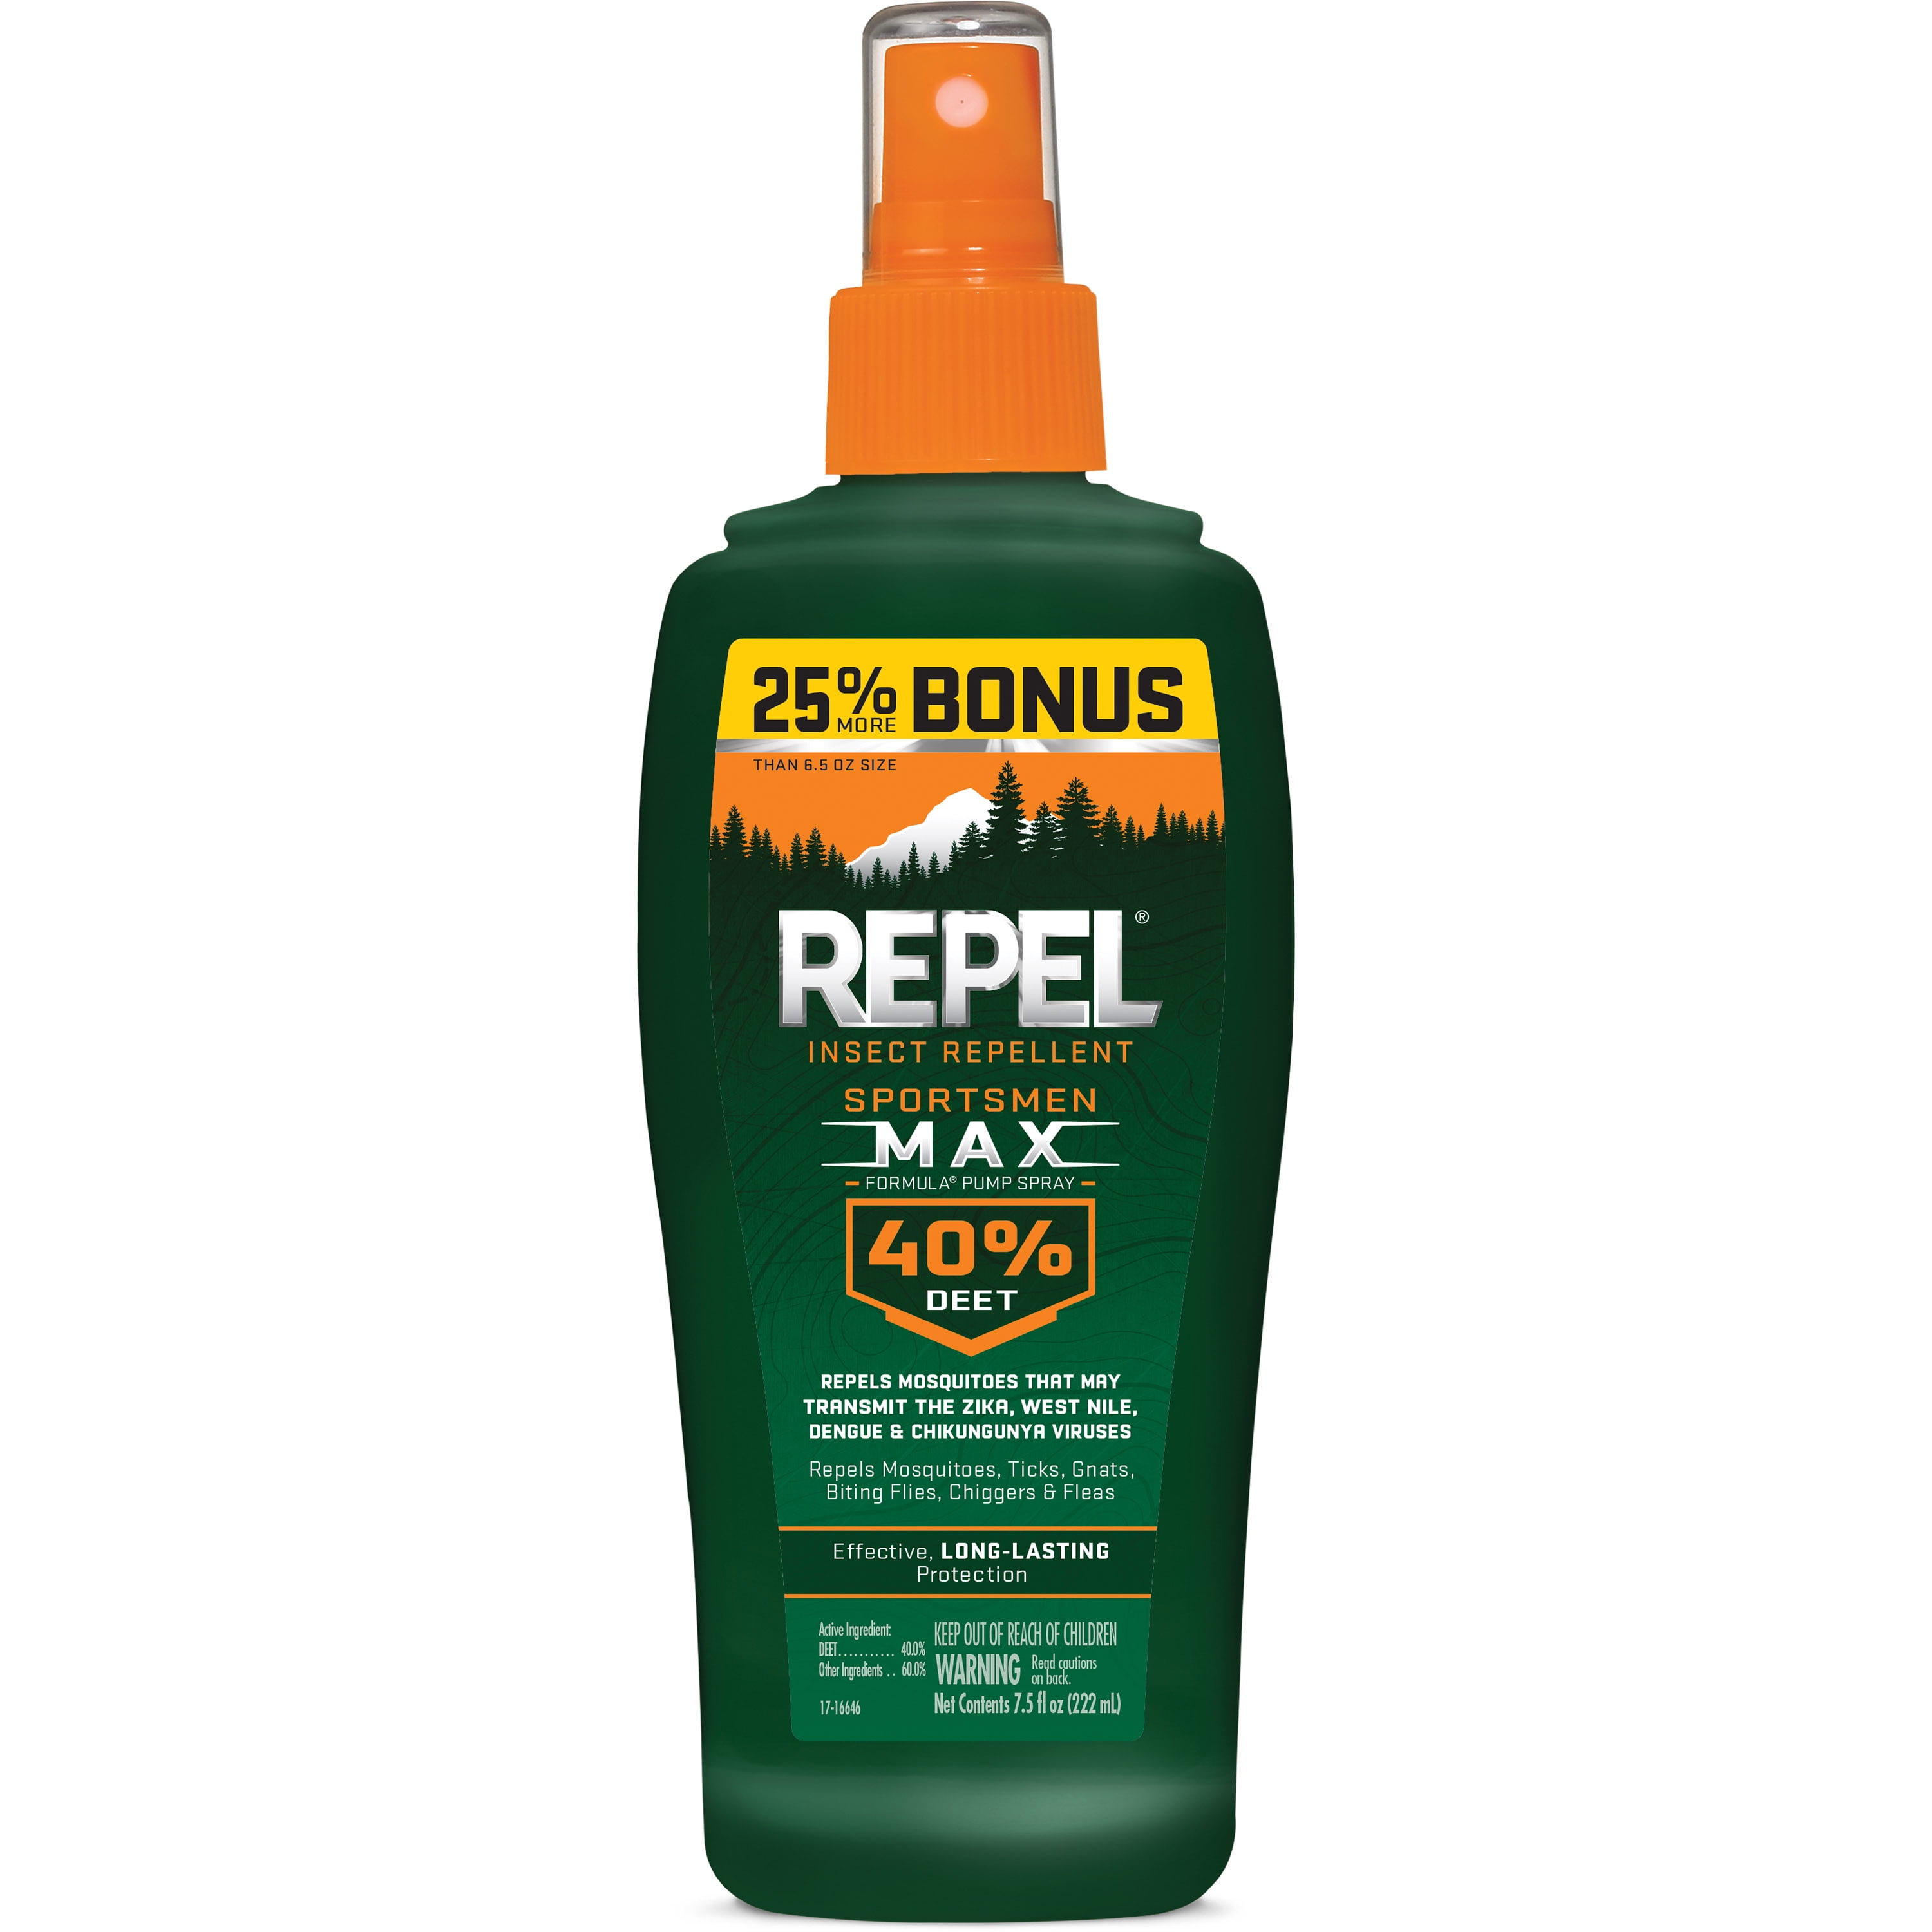 Repel Insect Repellent Sportsmen Max Formula Spray Pump 40% DEET, 7.5-fl oz